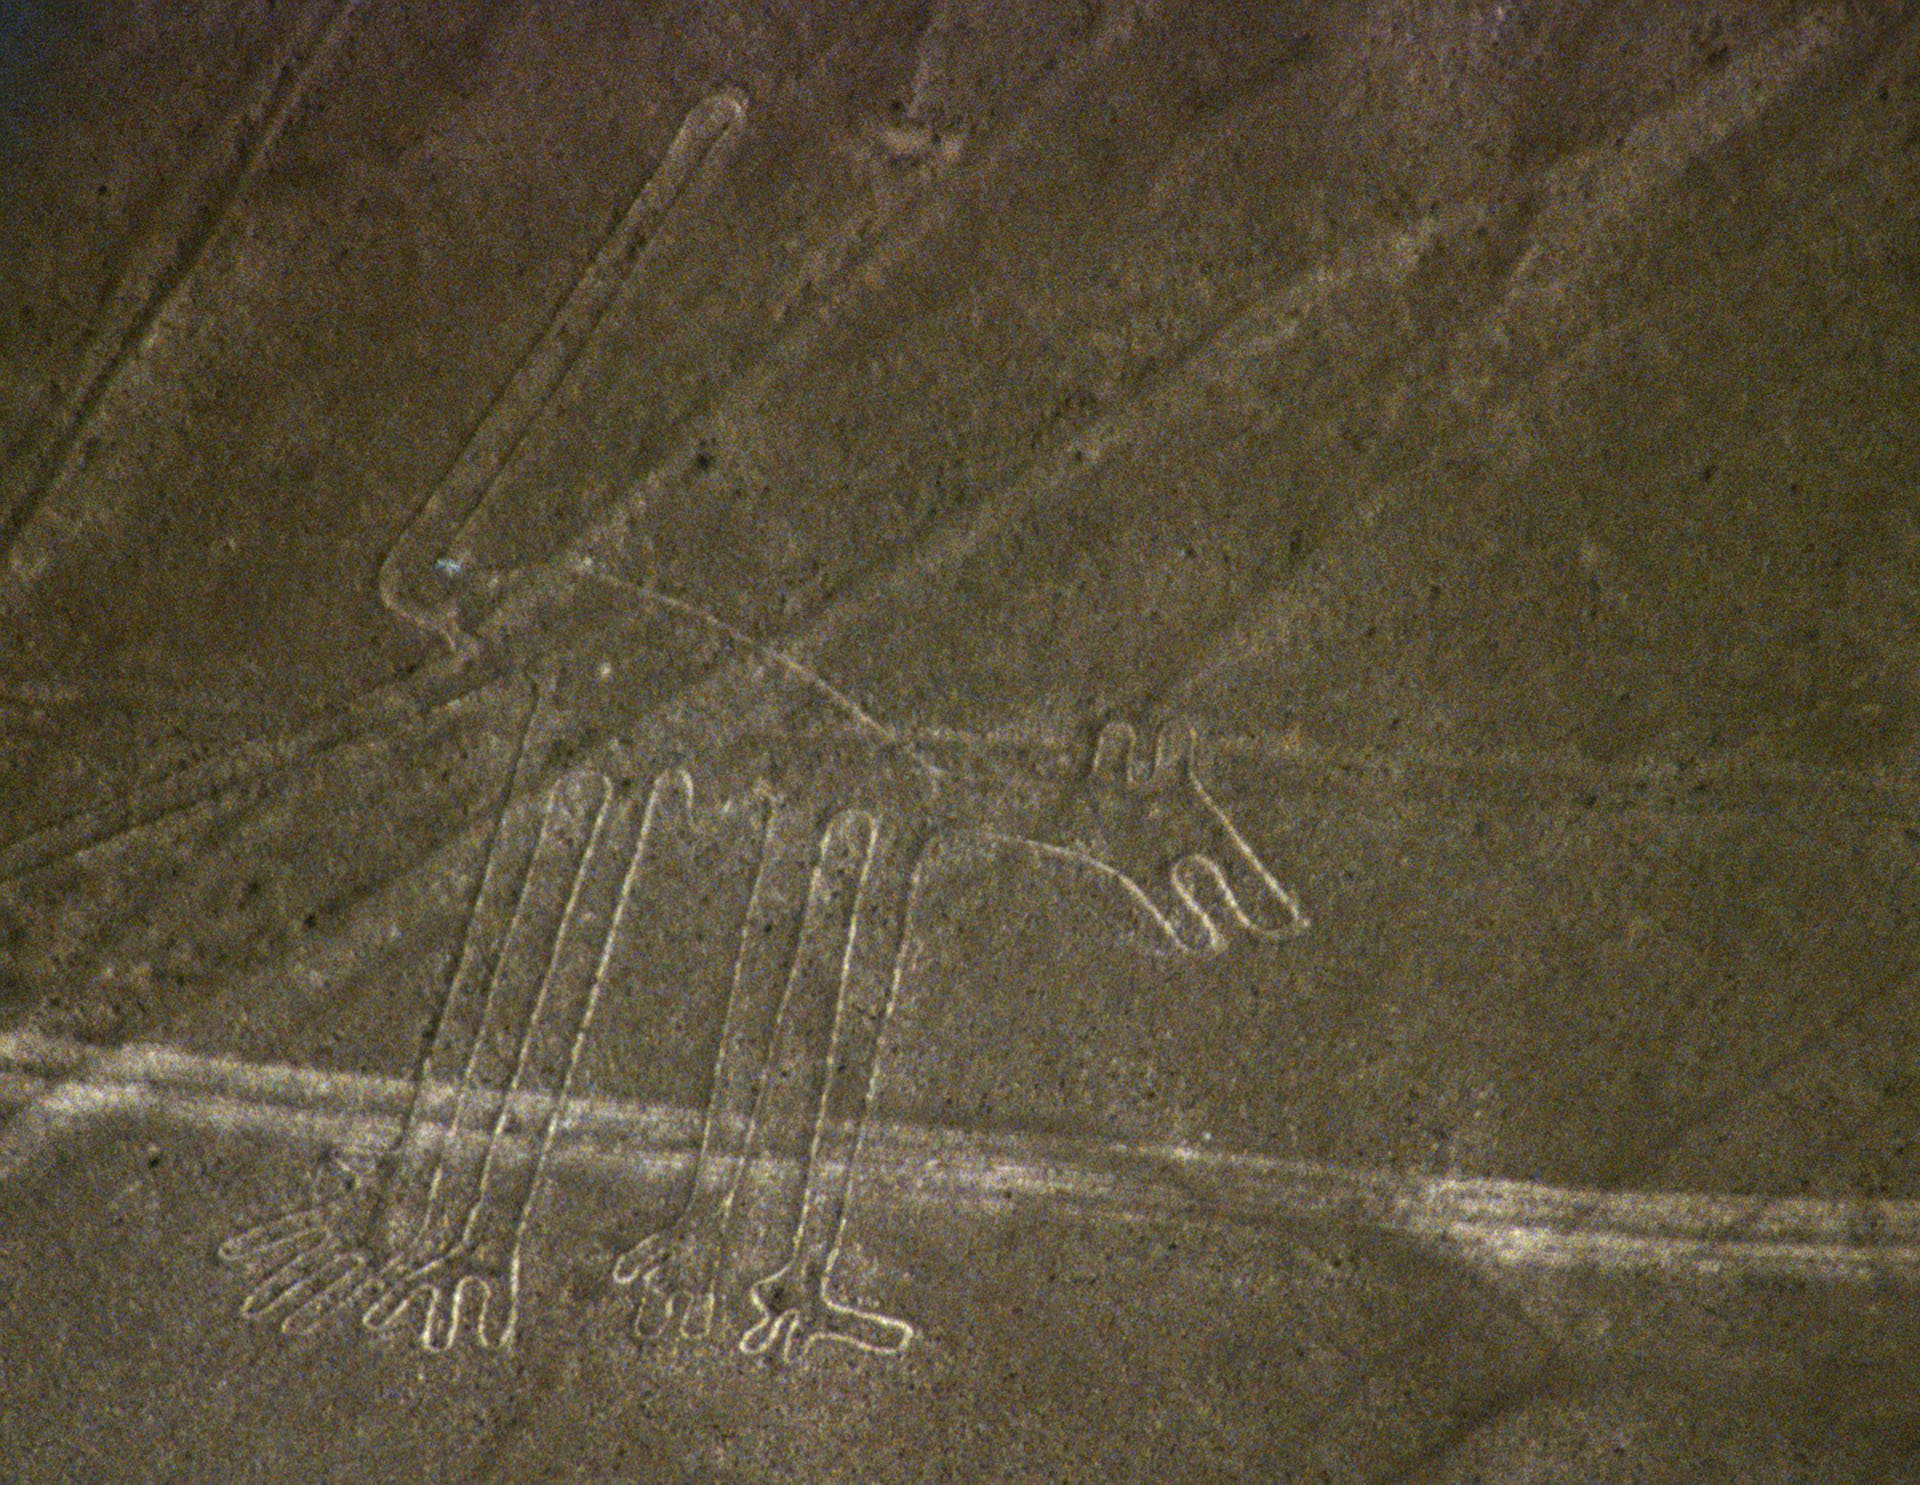 Le chien de Nazca